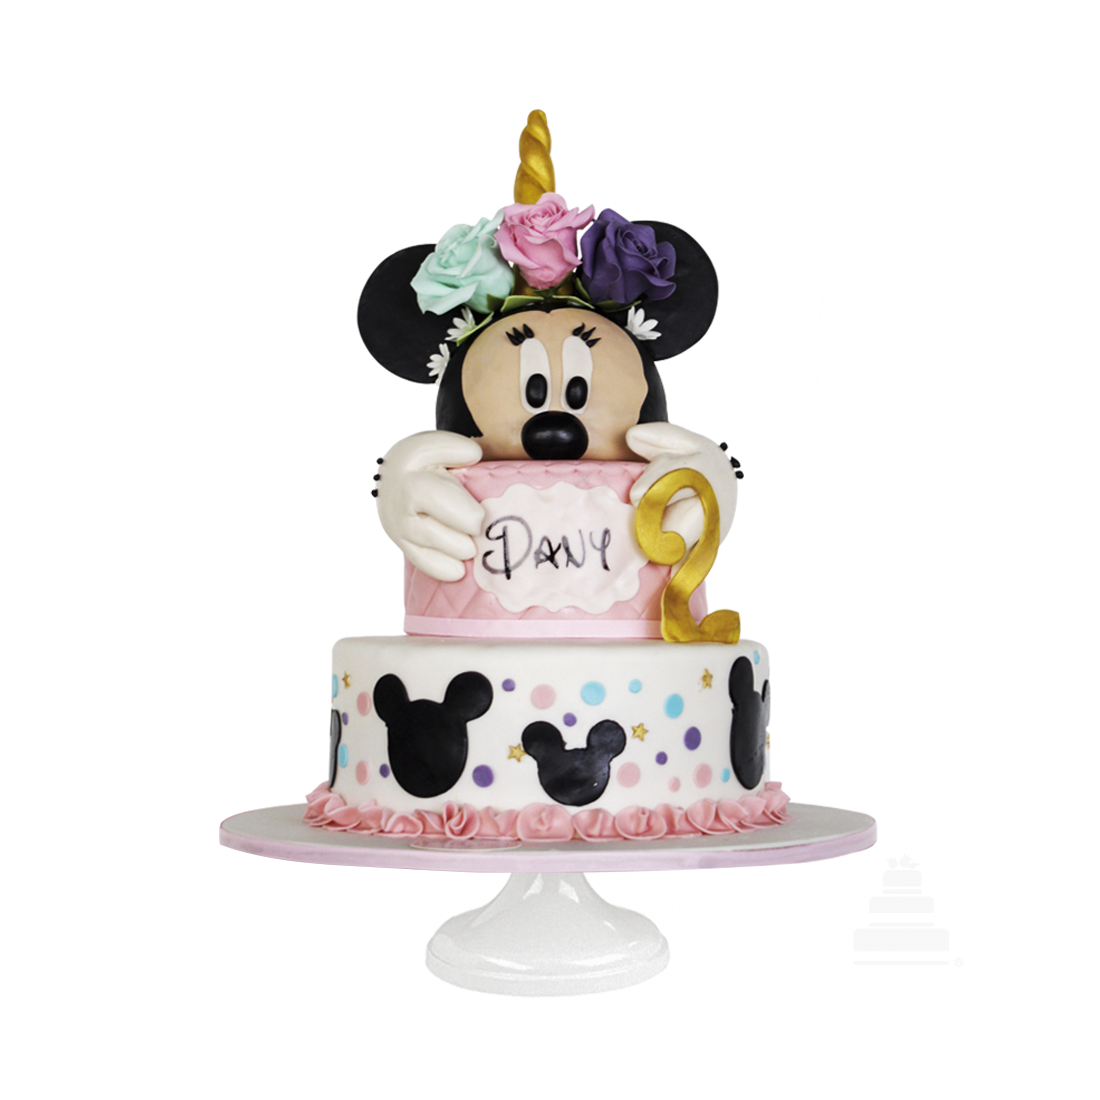 Pasteles de Mickey Mouse, & ,Pasteles de Minnie Mouse, Disney